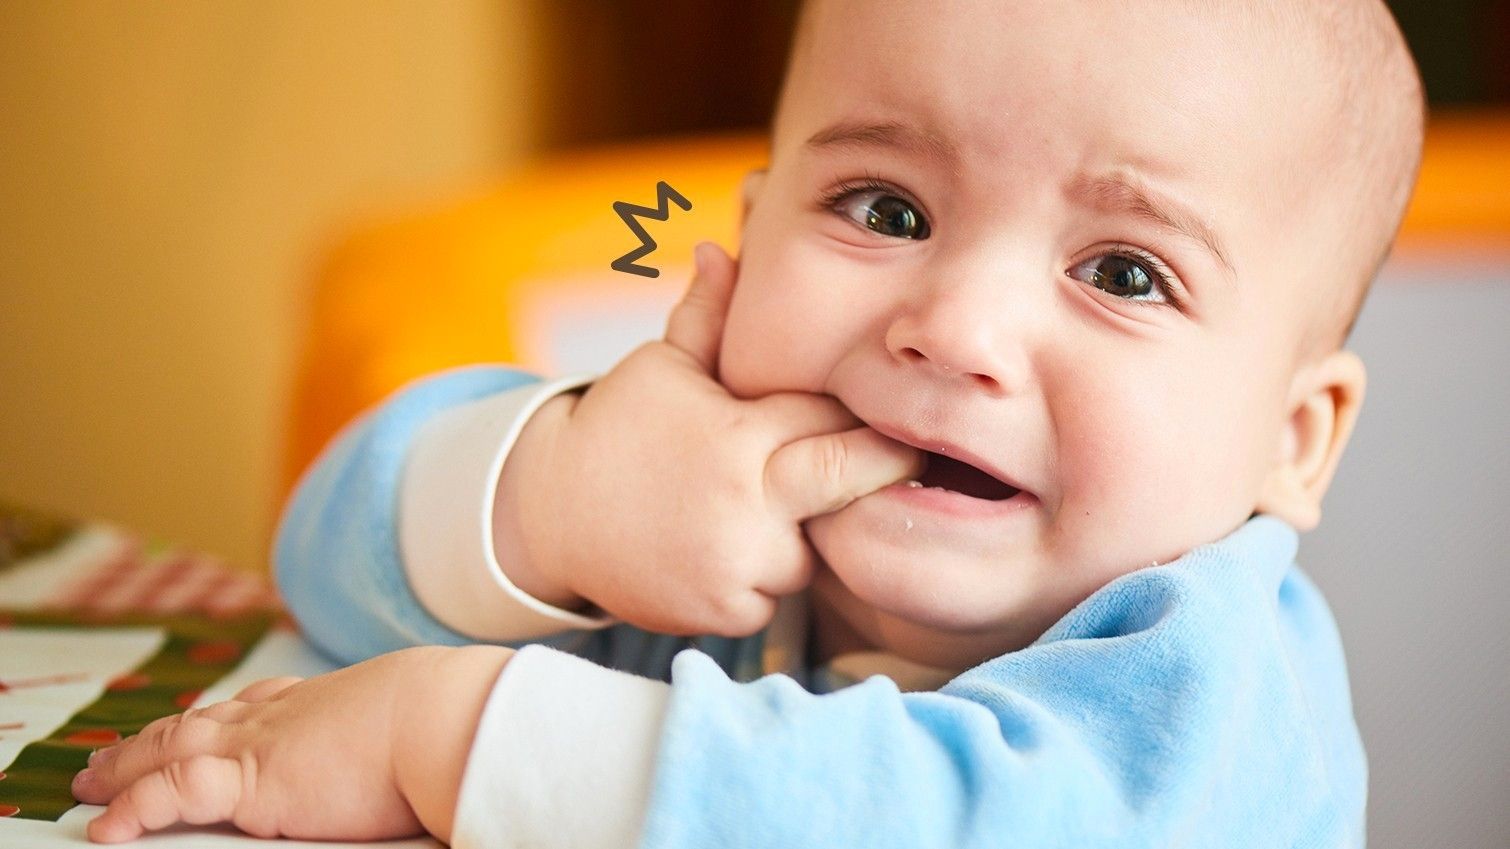 Bayi Tumbuh Gigi atau Sakit? Ini Cara Membedakannya